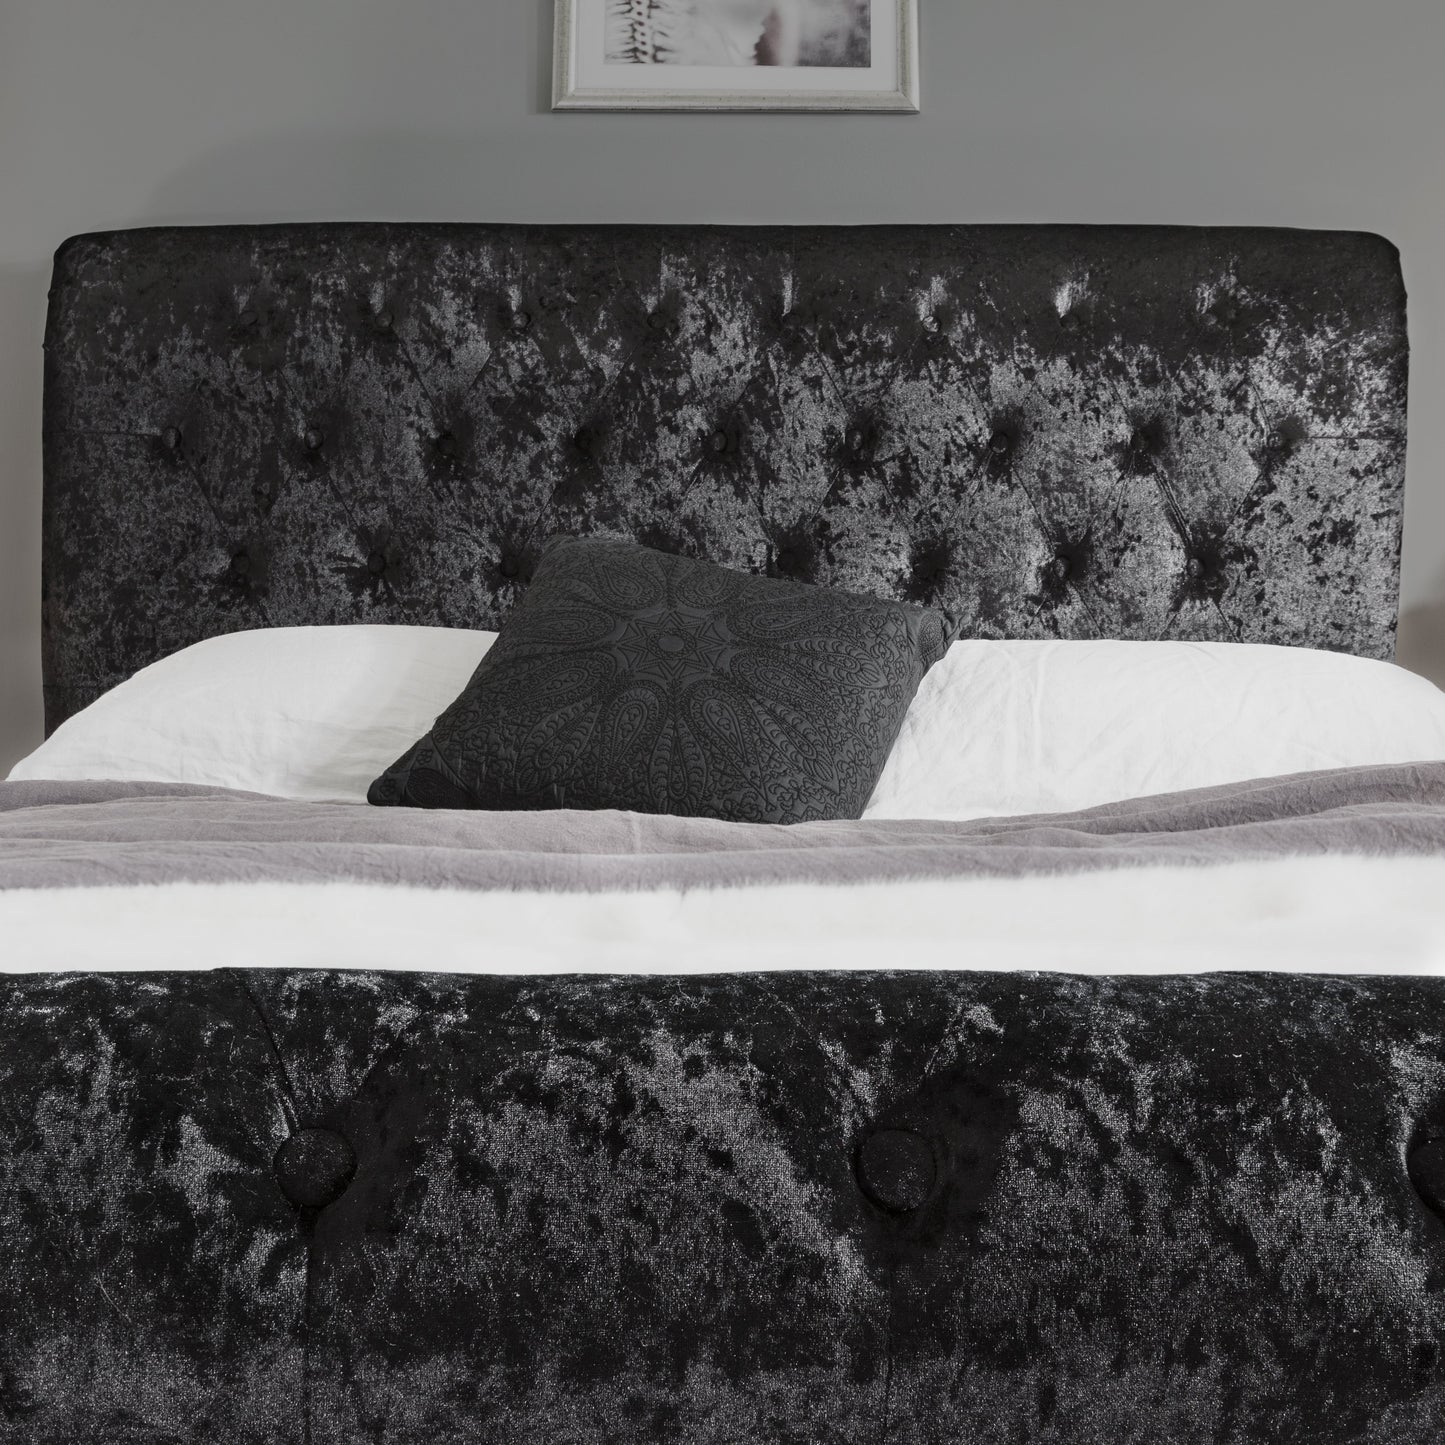 Black Crushed Velvet Sleigh Bed Frame King Size - Laura James